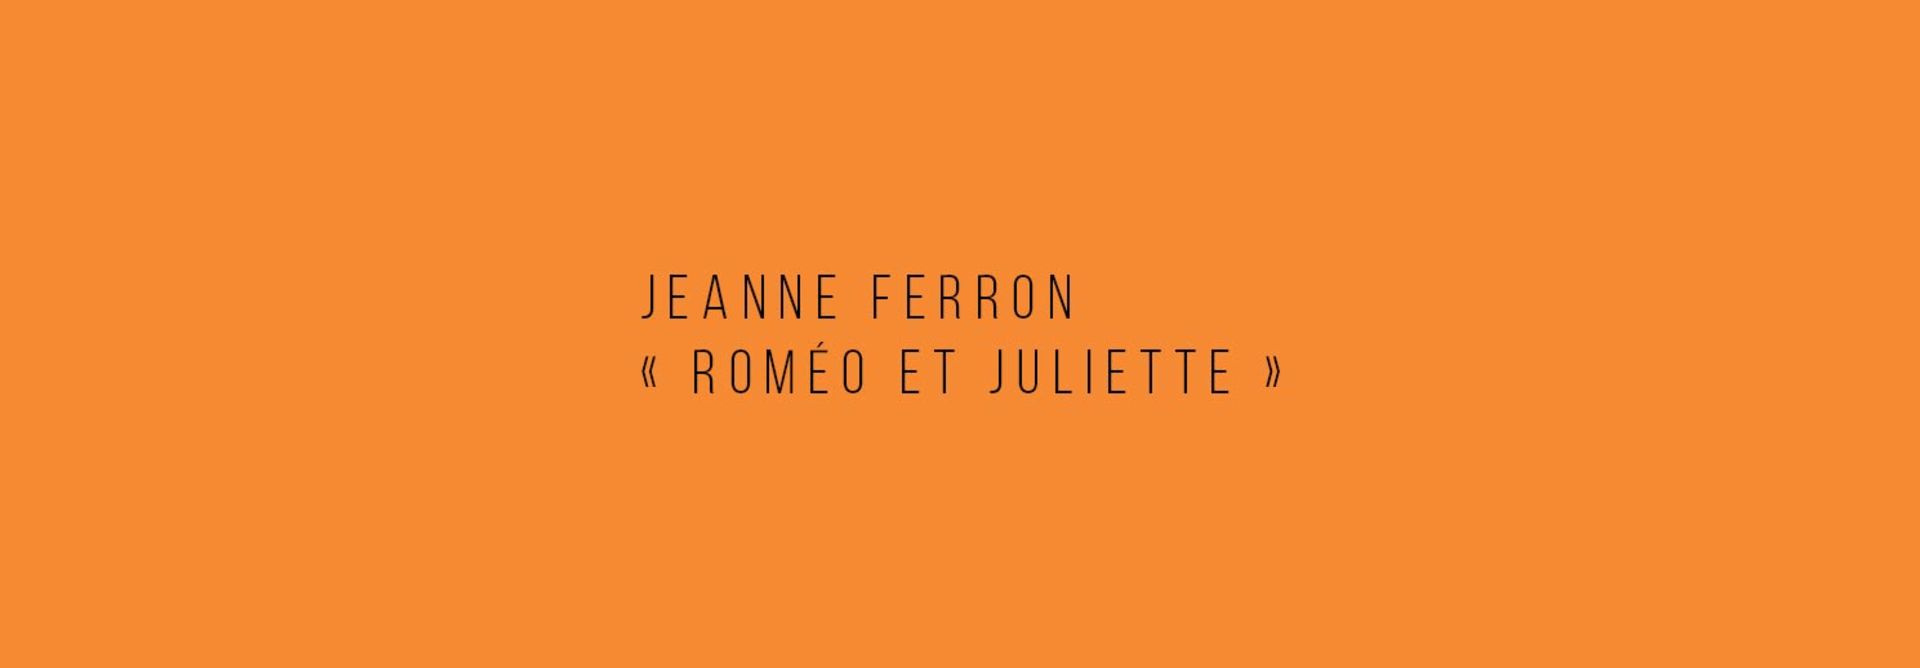 Jeanne Ferron